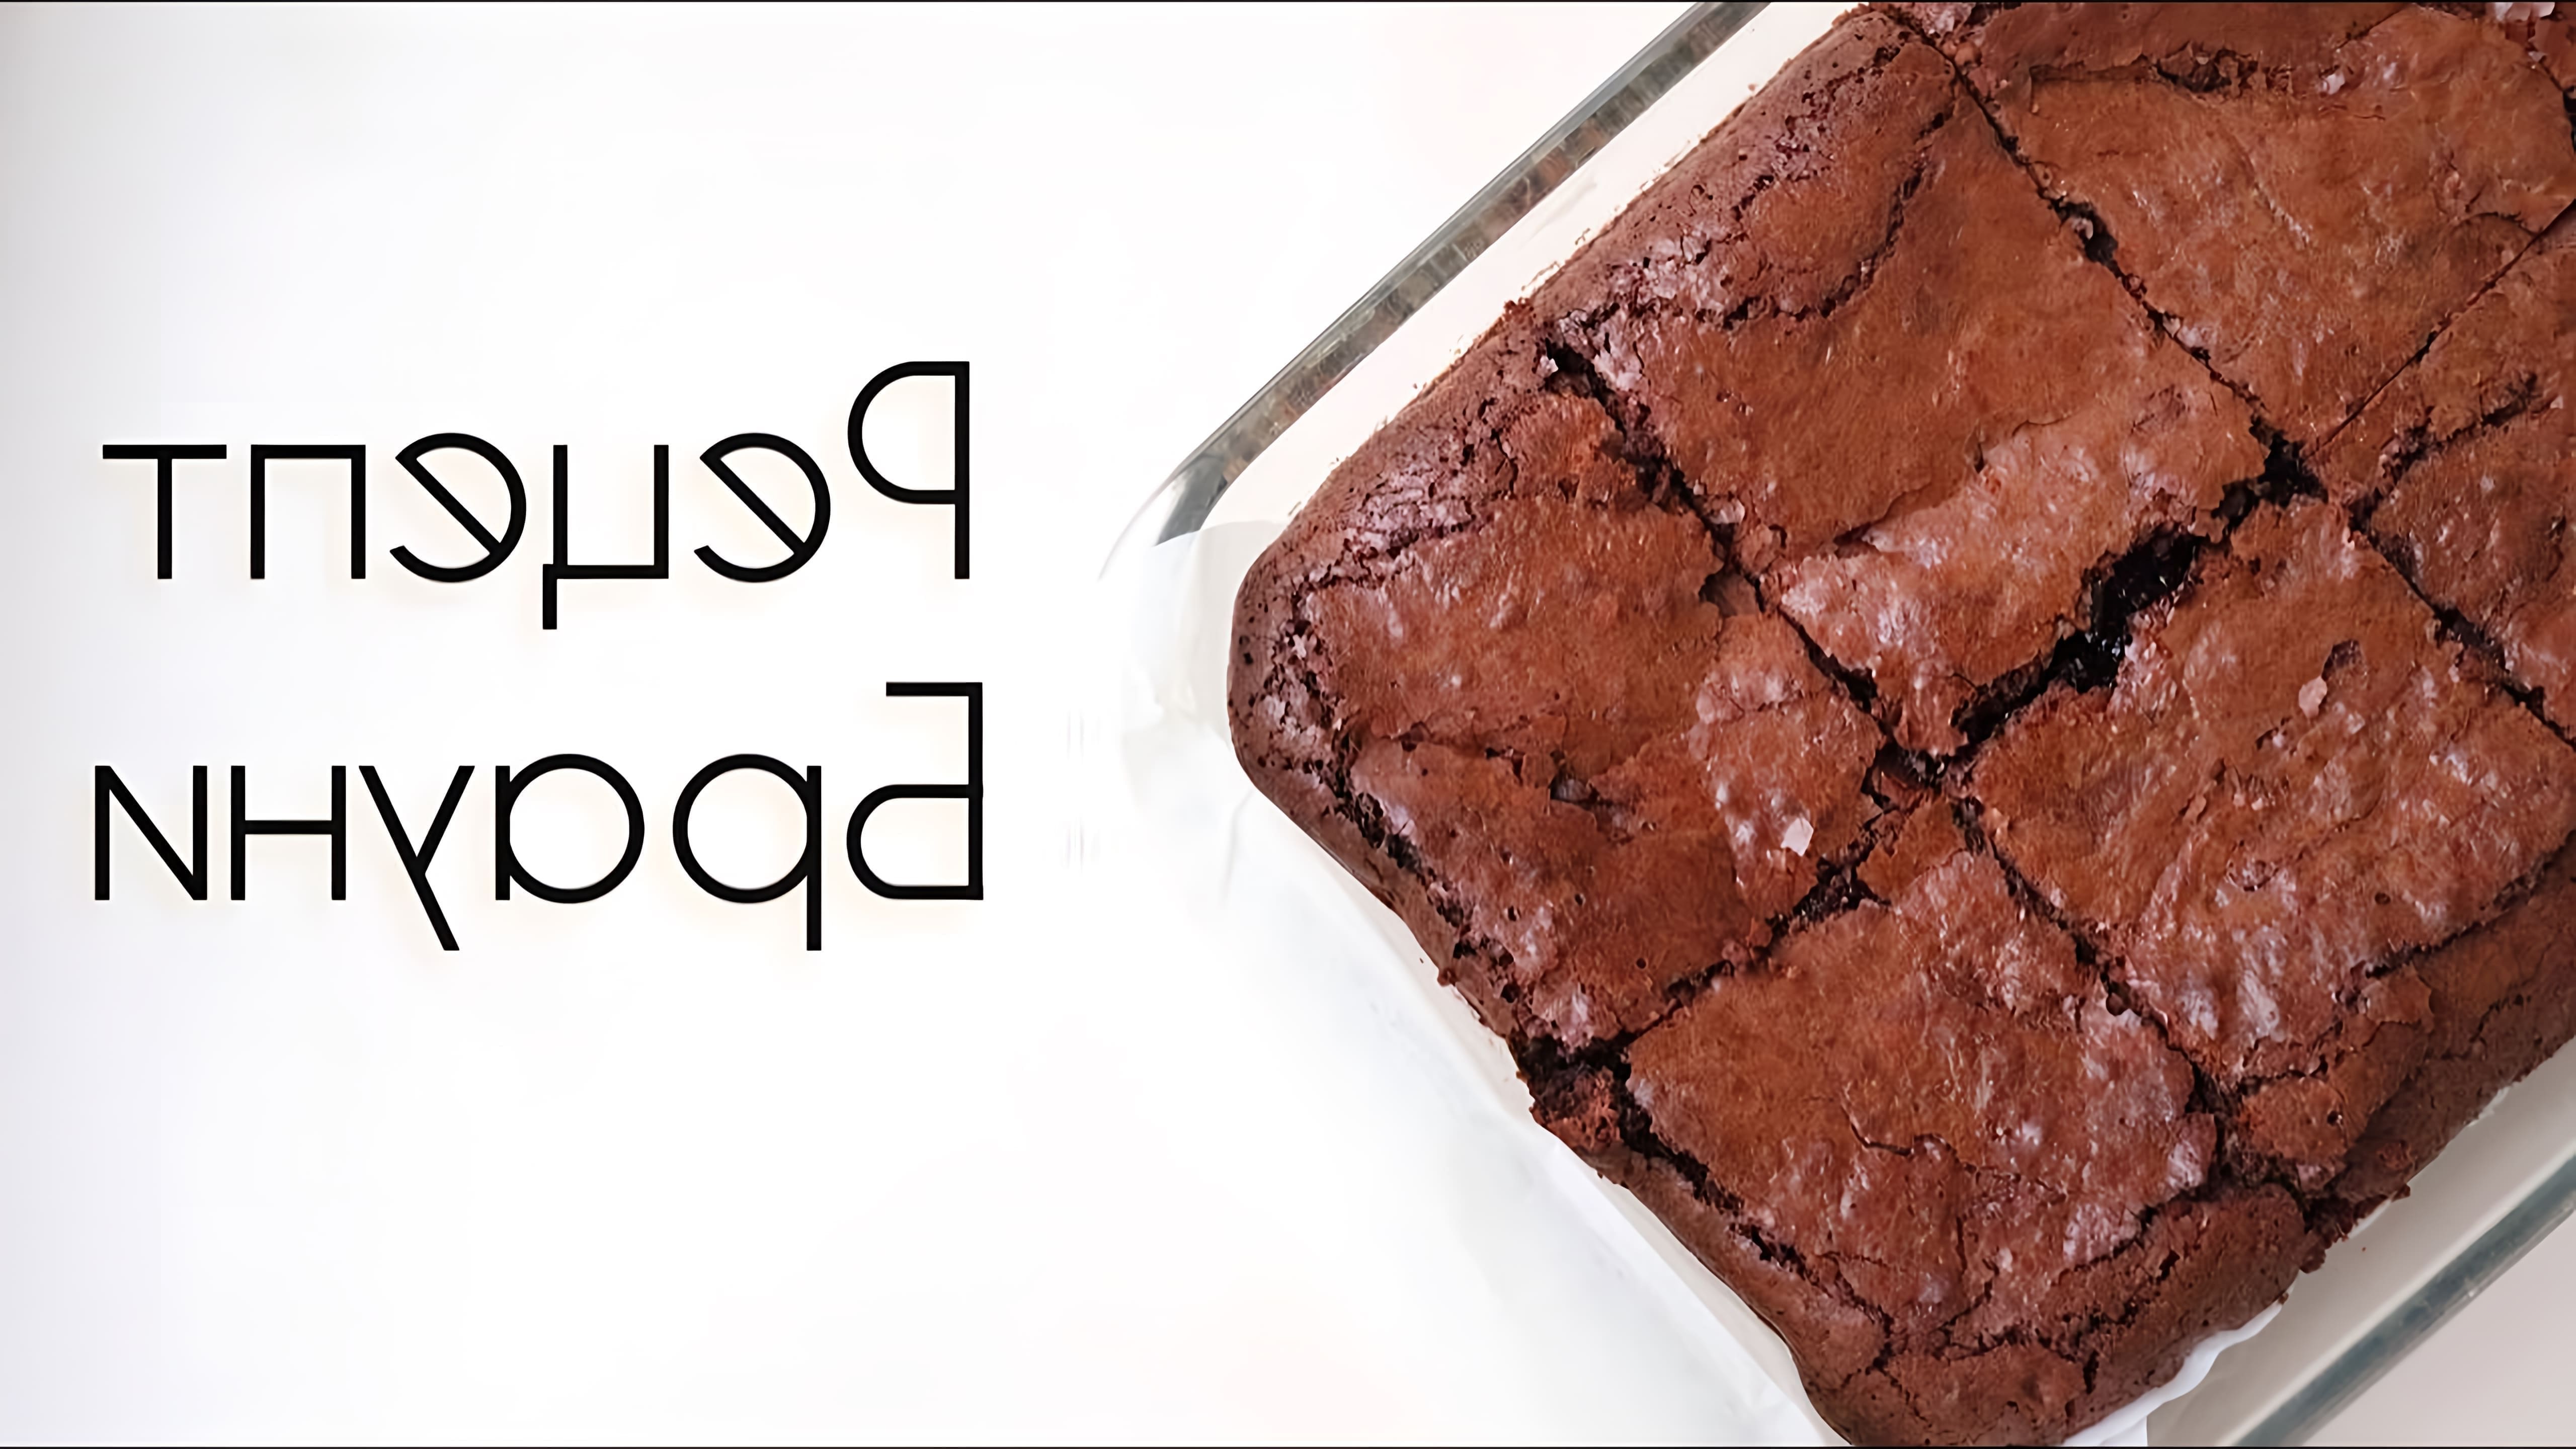 В этом видео демонстрируется рецепт приготовления брауни - шоколадного торта